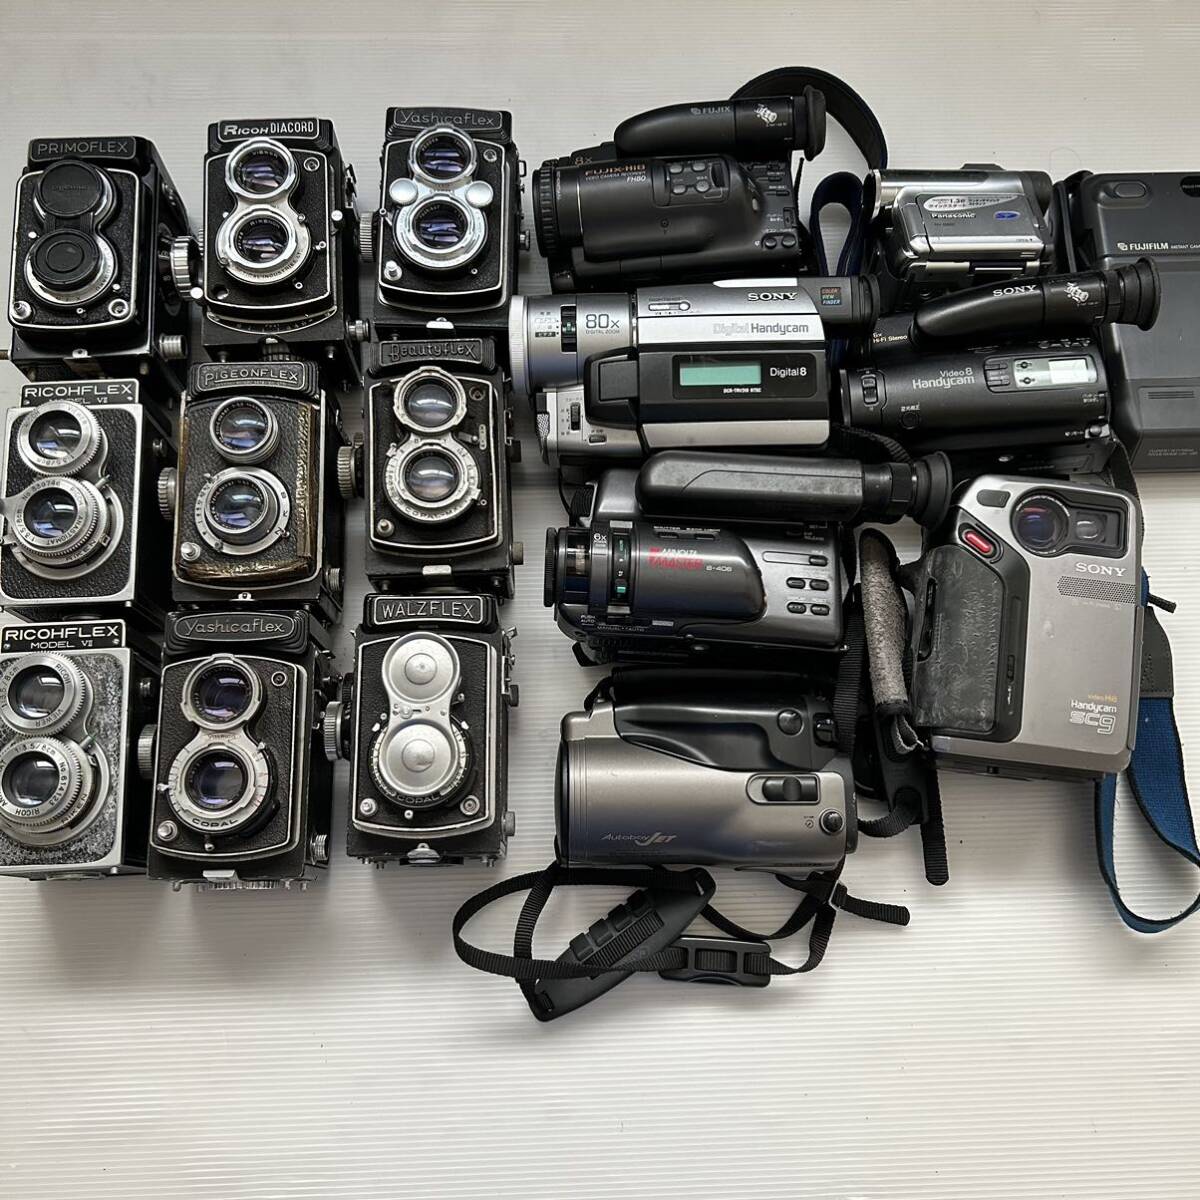 1円~二眼レフカメラ ビデオカメラまとめ YASHICA RICOH PRIMO PIGEONfUJIX SONY MINOLTA Canon Panasonicなど(ジャンク品 動作未確認 KJ) の画像1